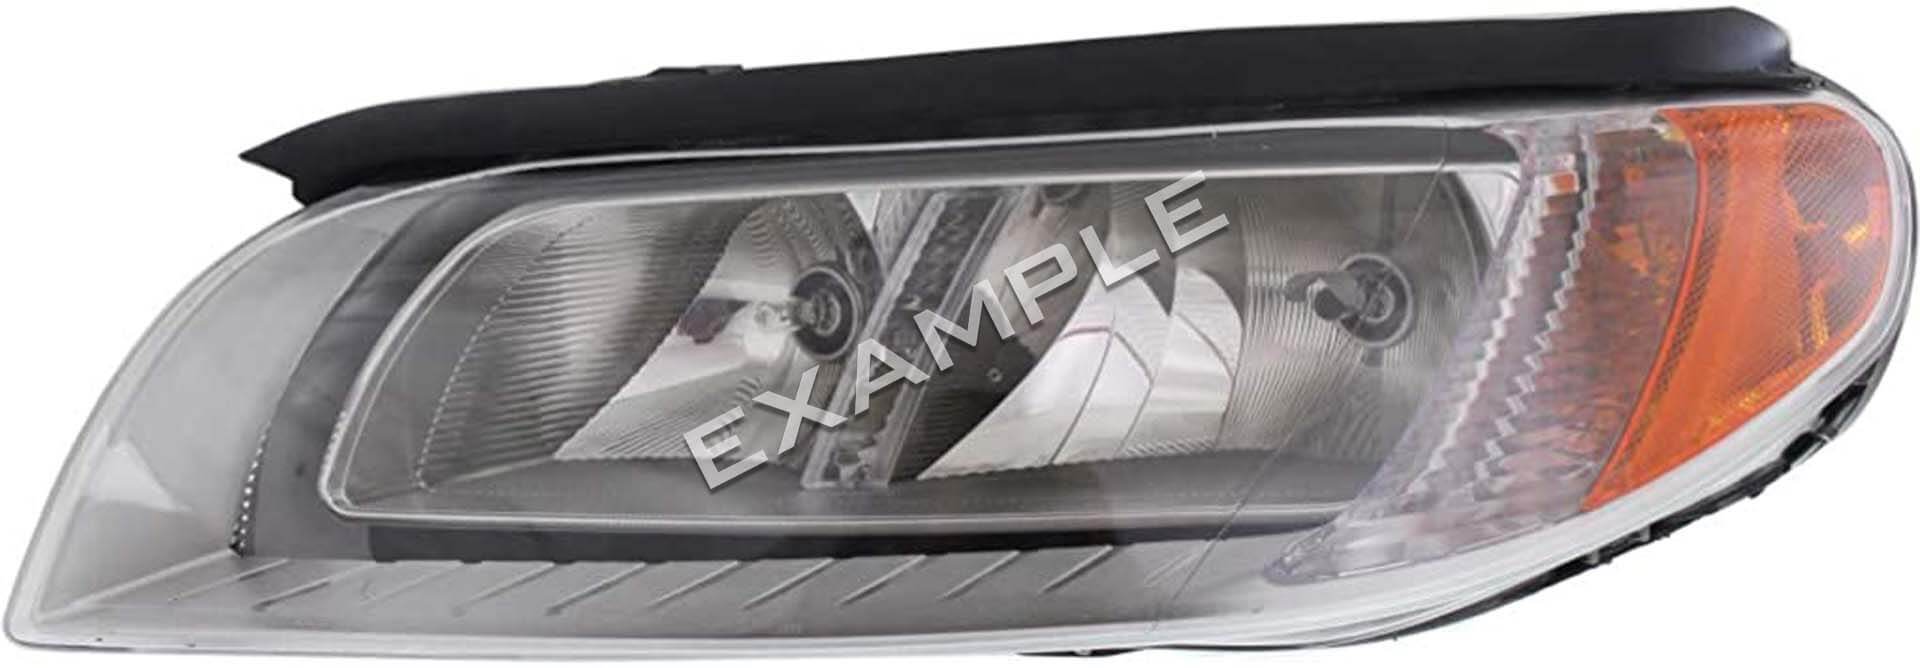 Volvo V70 08-16 bi-xenon koplamp licht upgrade kit voor halogeen koplampen